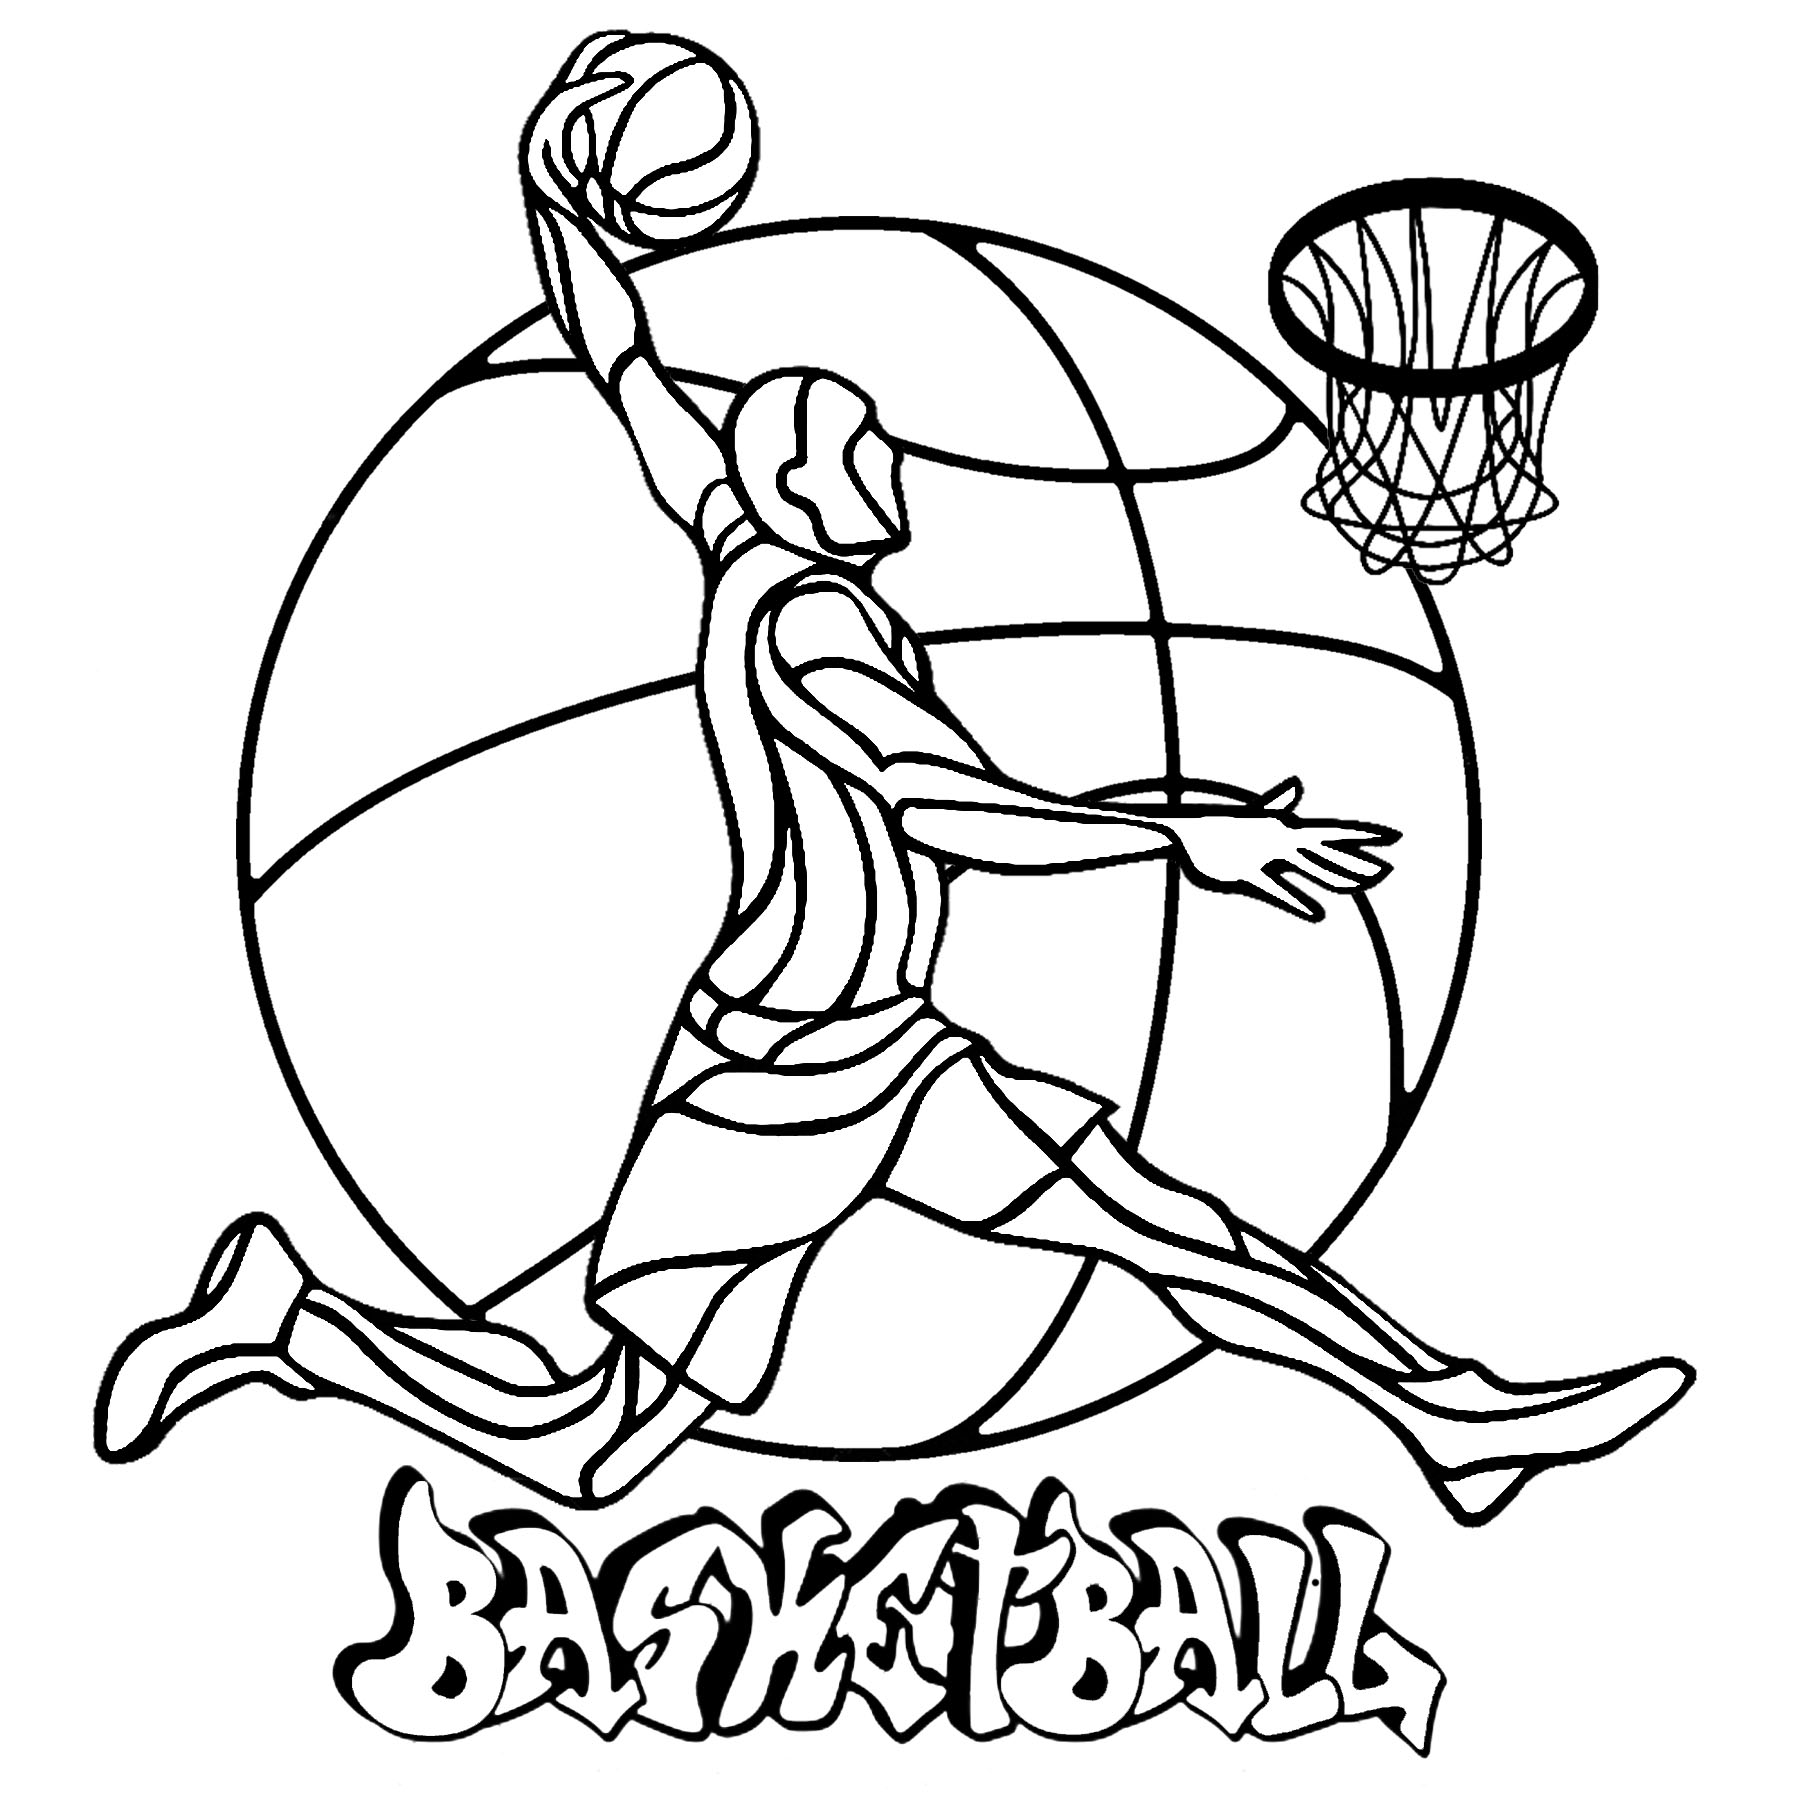 Uma página colorida de basquetebol com um jogador, um cesto, uma bola ao fundo, e 'Basquetebol' escrito em Graffiti